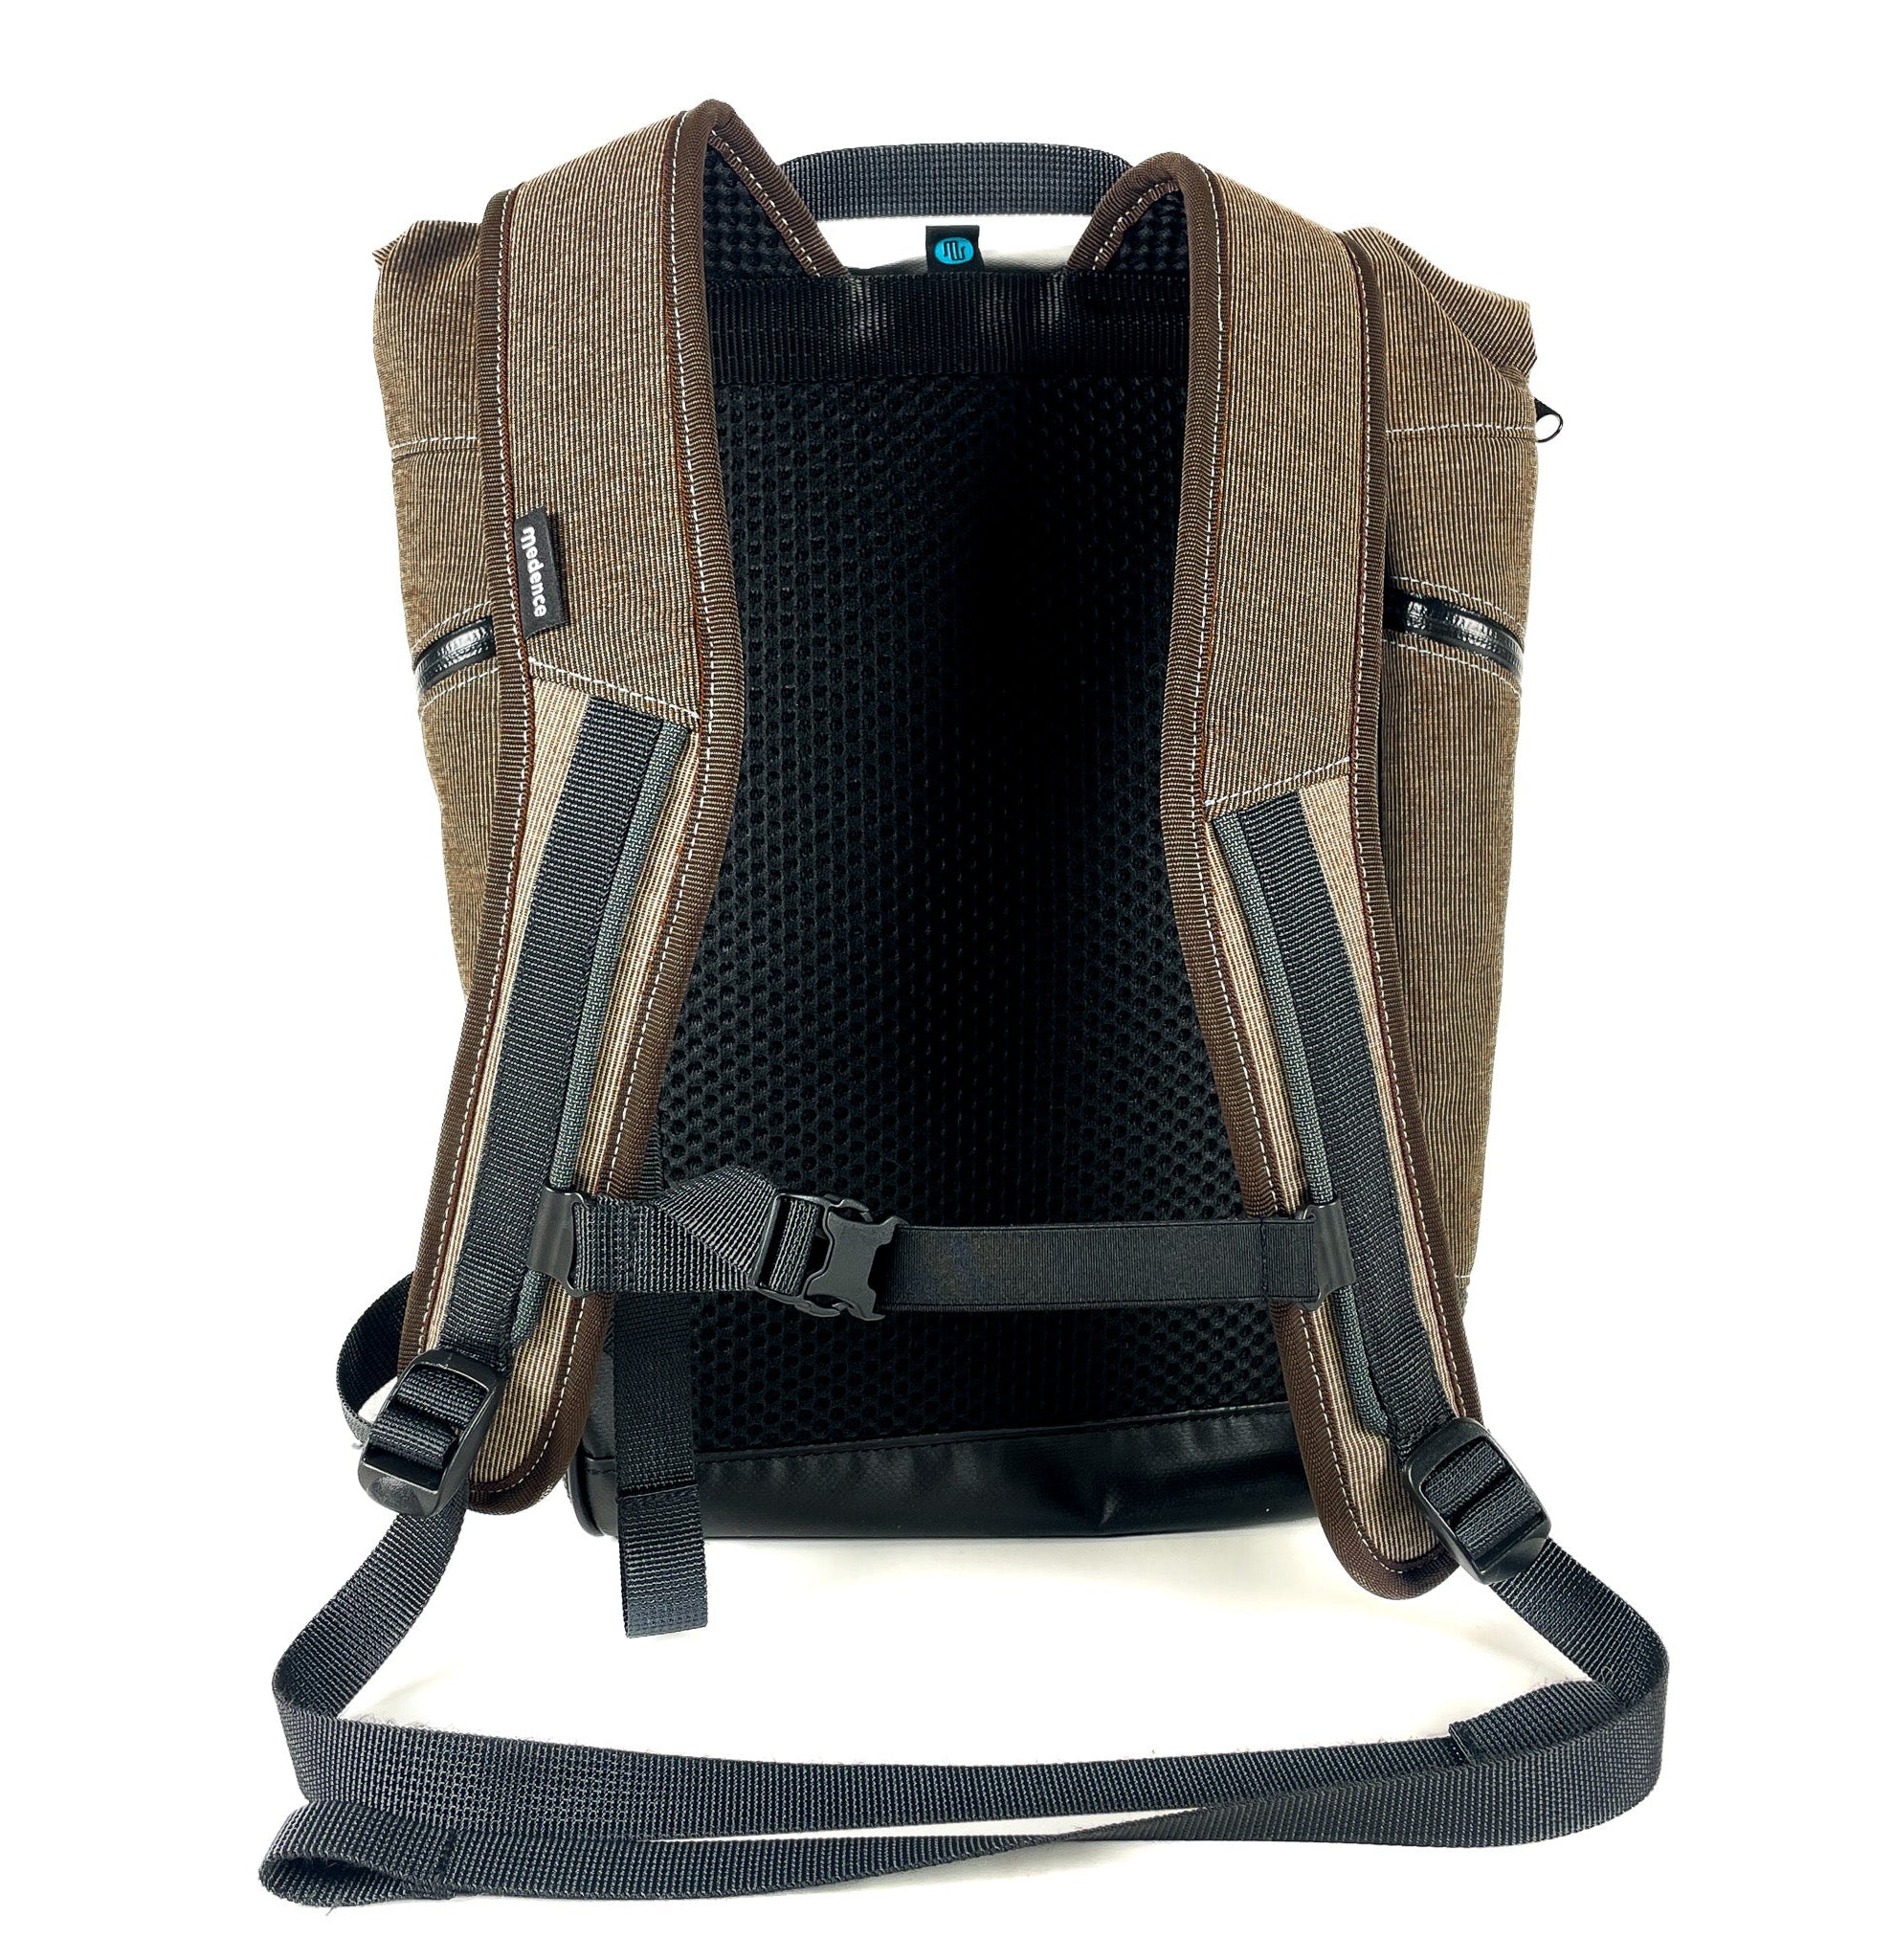 Backpack - BUDDY No. 158 - Backpack - medencebag